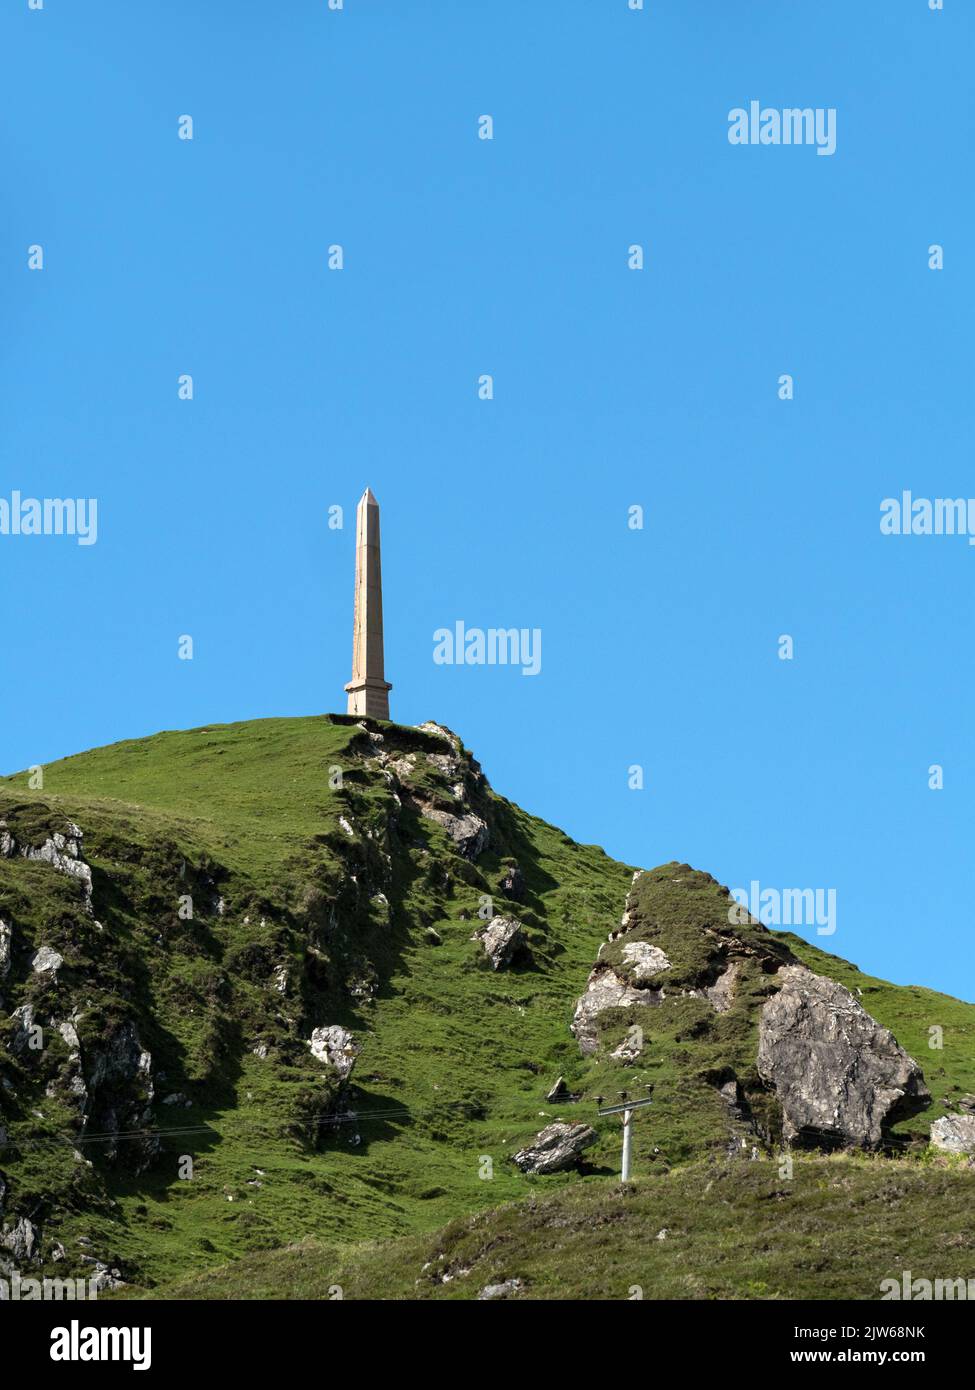 Der Obelisk des Lord Colonsay Duncan MacNeill Monument befindet sich auf einem Hügel auf der abgelegenen Hebriden-Insel Colonsay, Schottland, Großbritannien Stockfoto